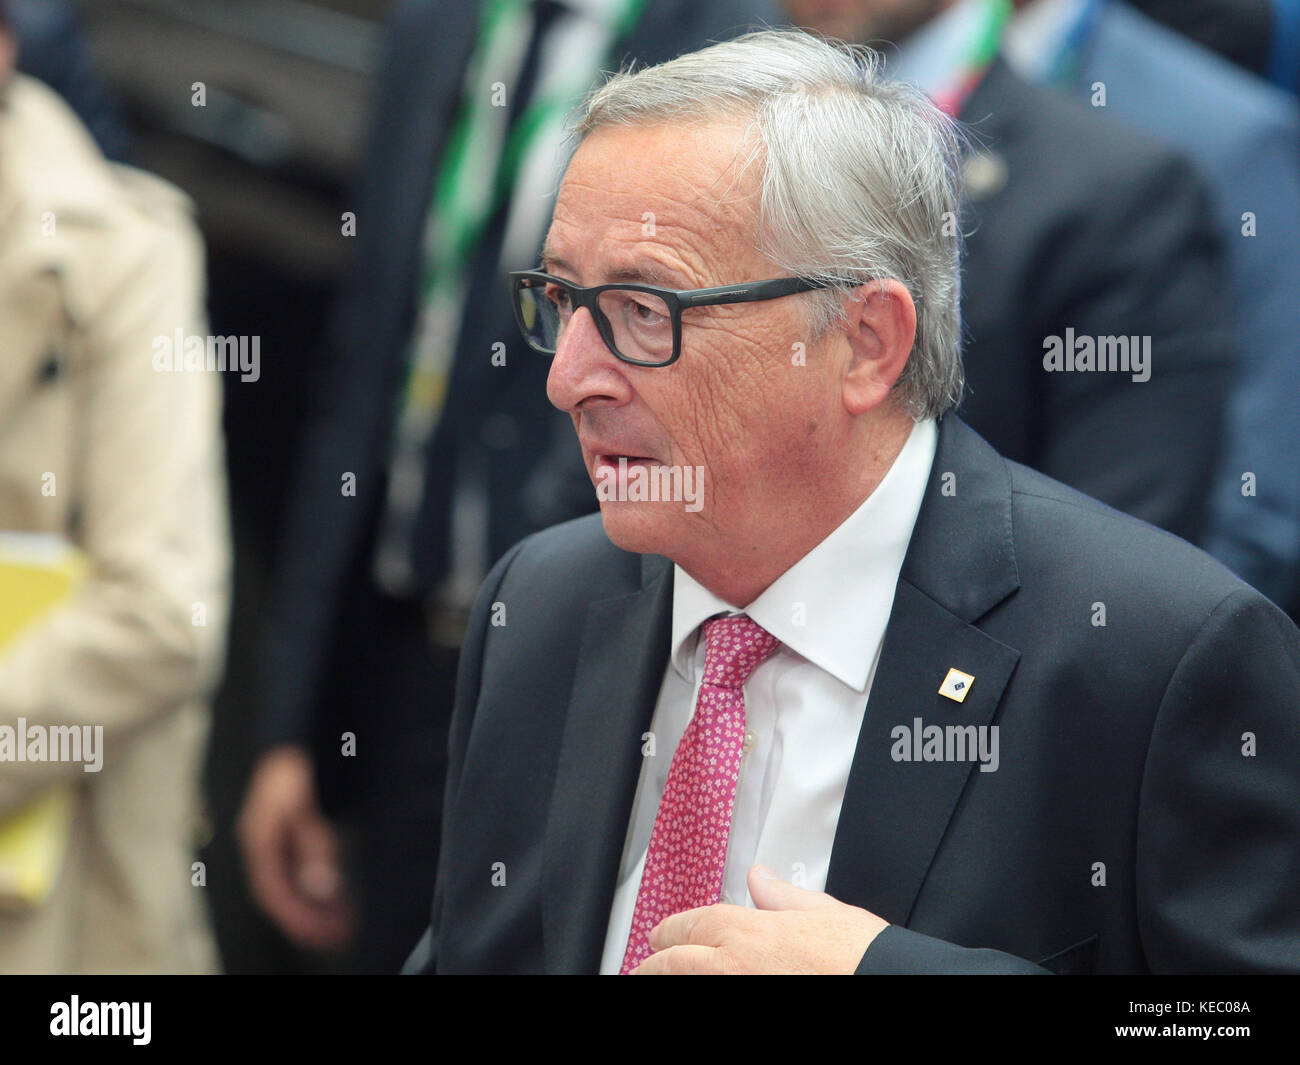 Bruselas, Bélgica. 19 oct, 2017. Jean-Claude Juncker, presidente de la Comisión Europea, en el Consejo Europeo. Crédito: leo cavallo/alamy live news Foto de stock